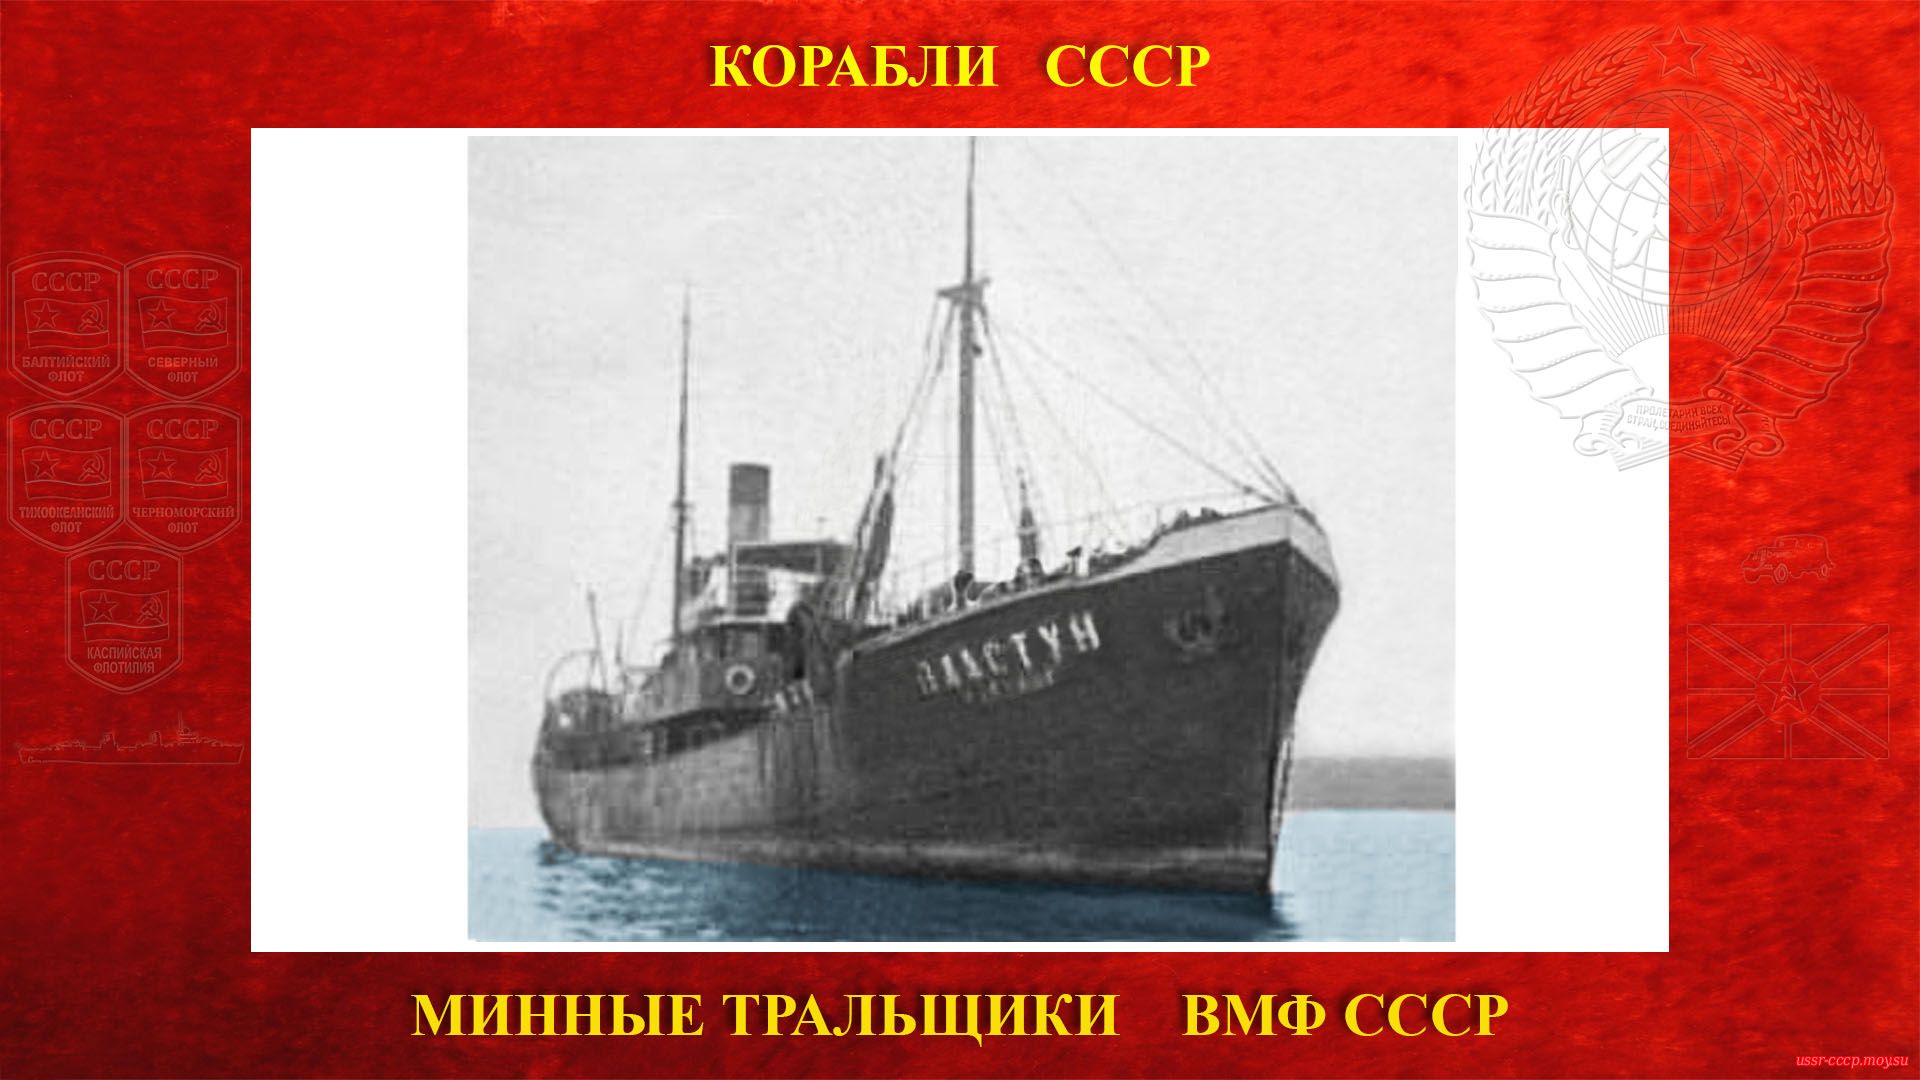 Т-11 (Пластун) — Советский минный тральщик ВМФ СССР (повествование)